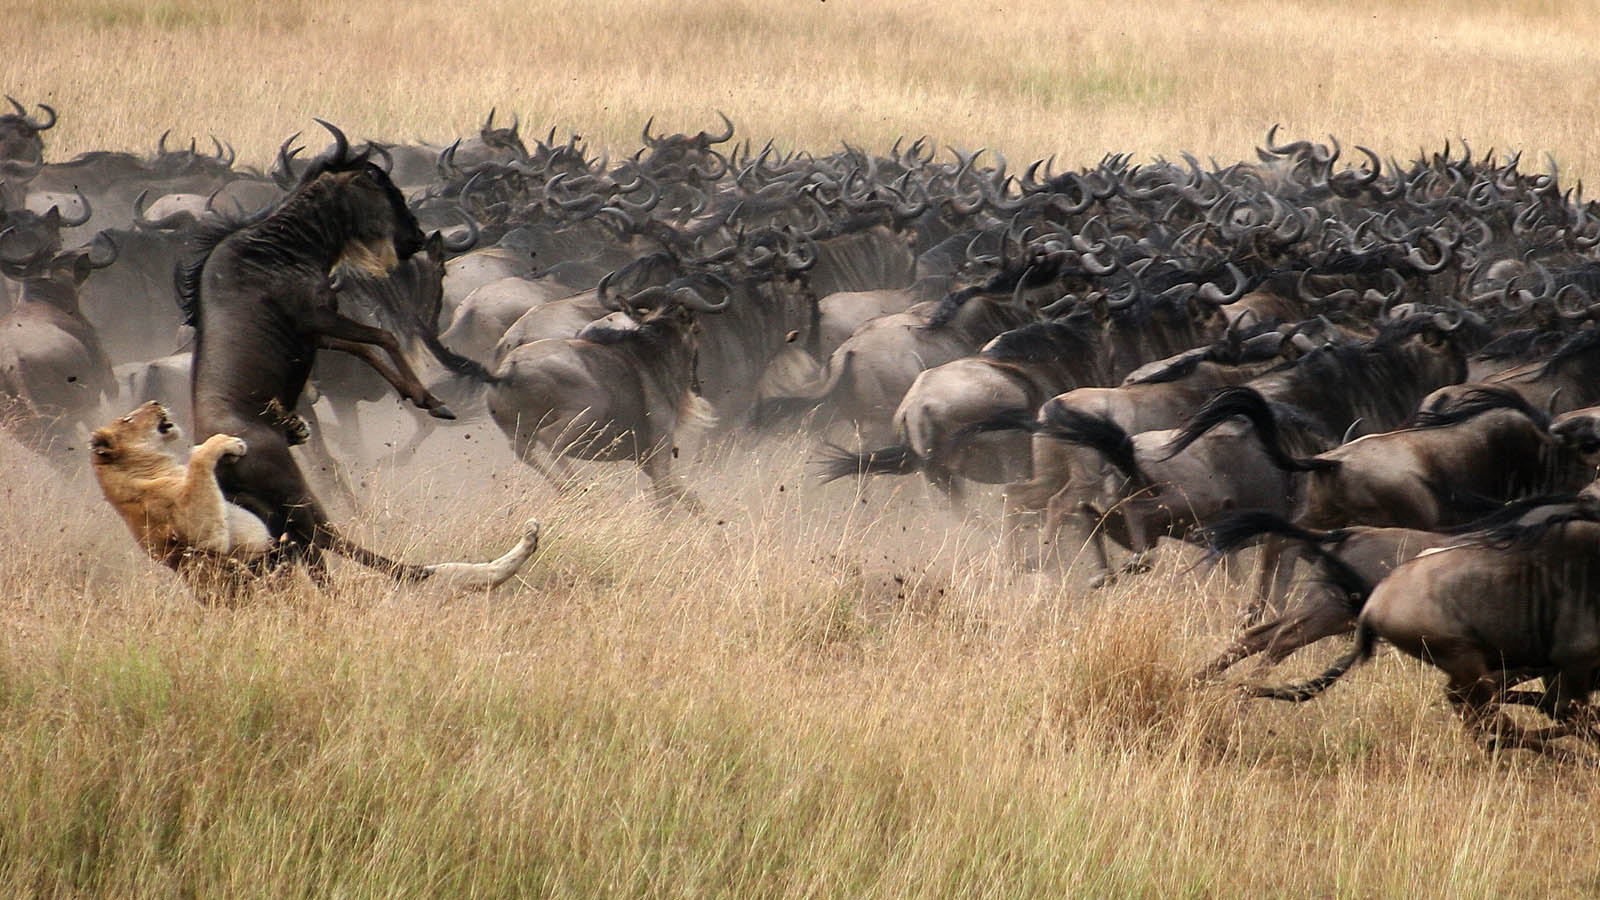 Serengeti wildebeest migration tour